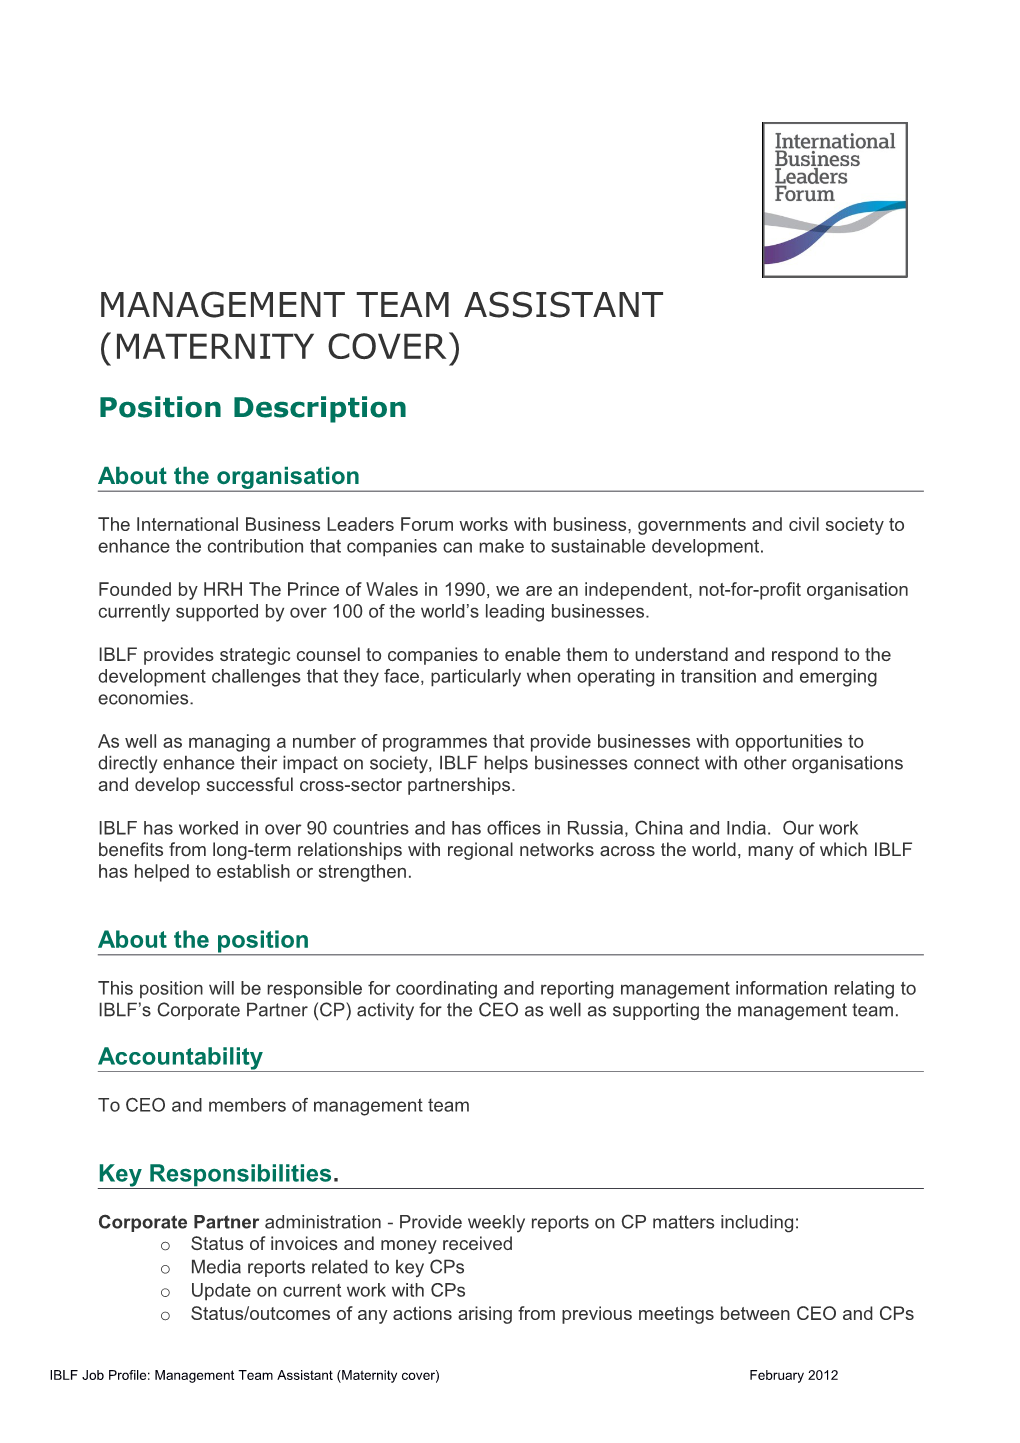 Management Team Assistant